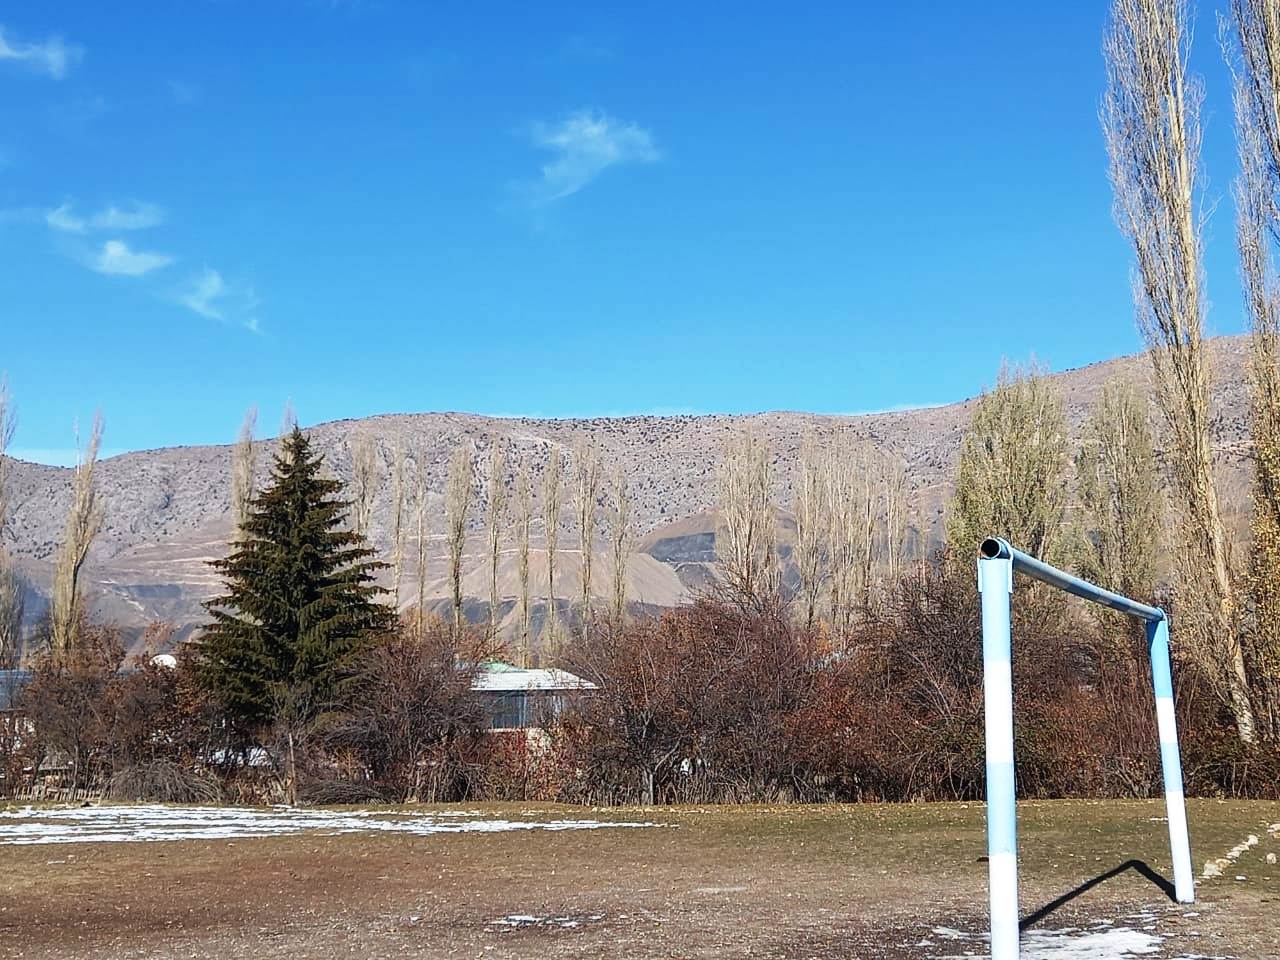 Хайдаркан. Вид со спортплощадки киргизской школы в сторону улицы Крупской чуть крупнее, ноябрь 2021 года